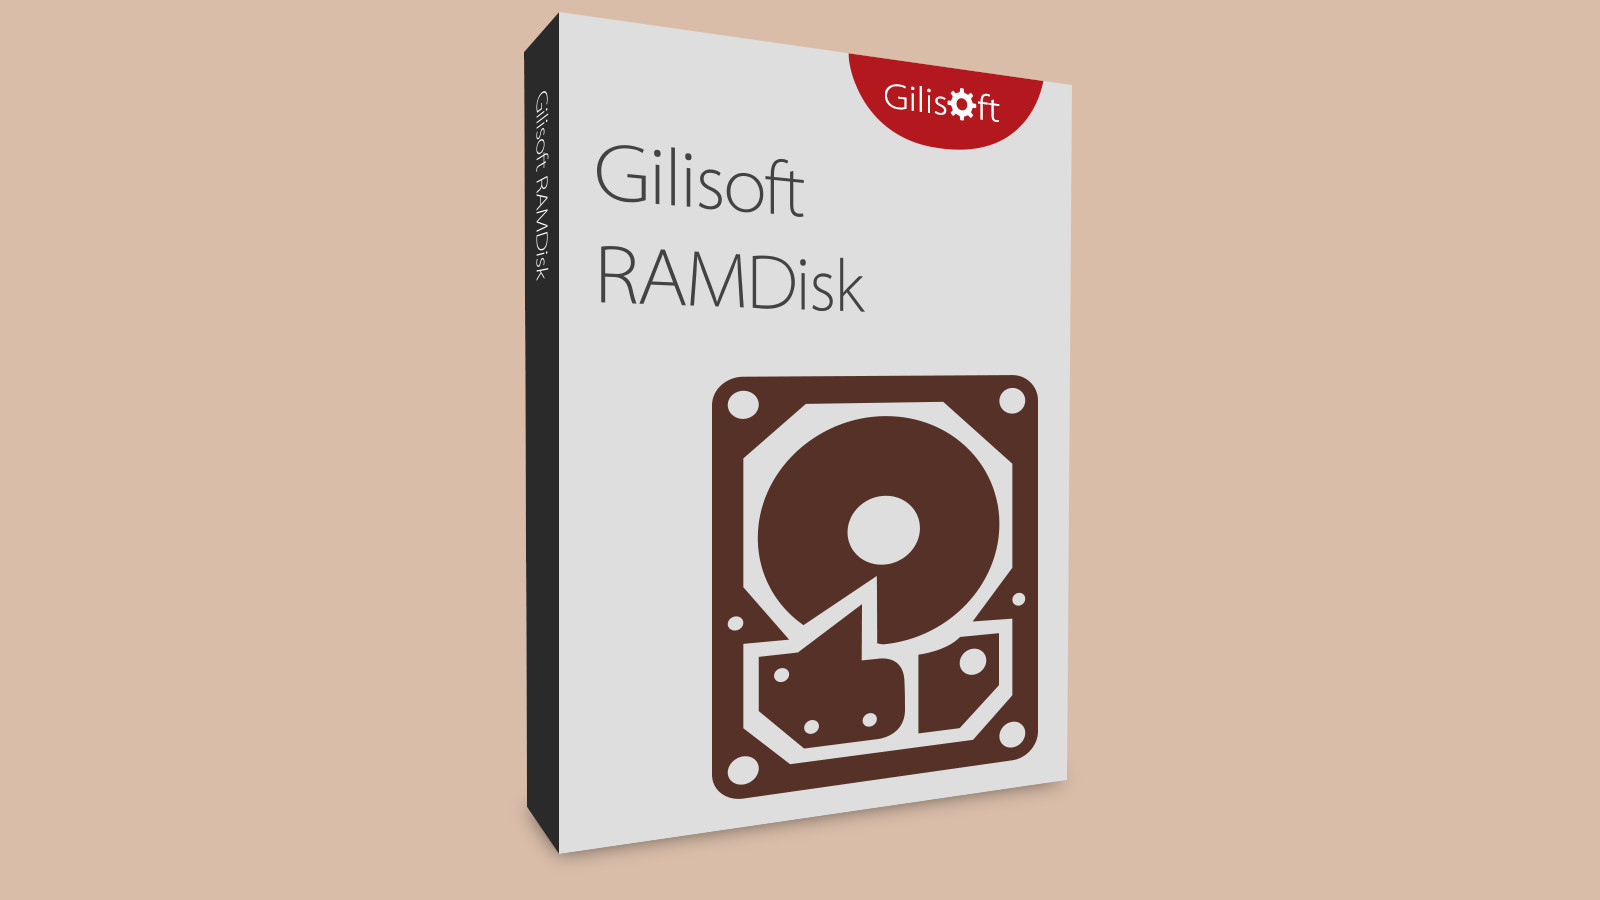 Gilisoft RAMDisk CD Key (15.54$)